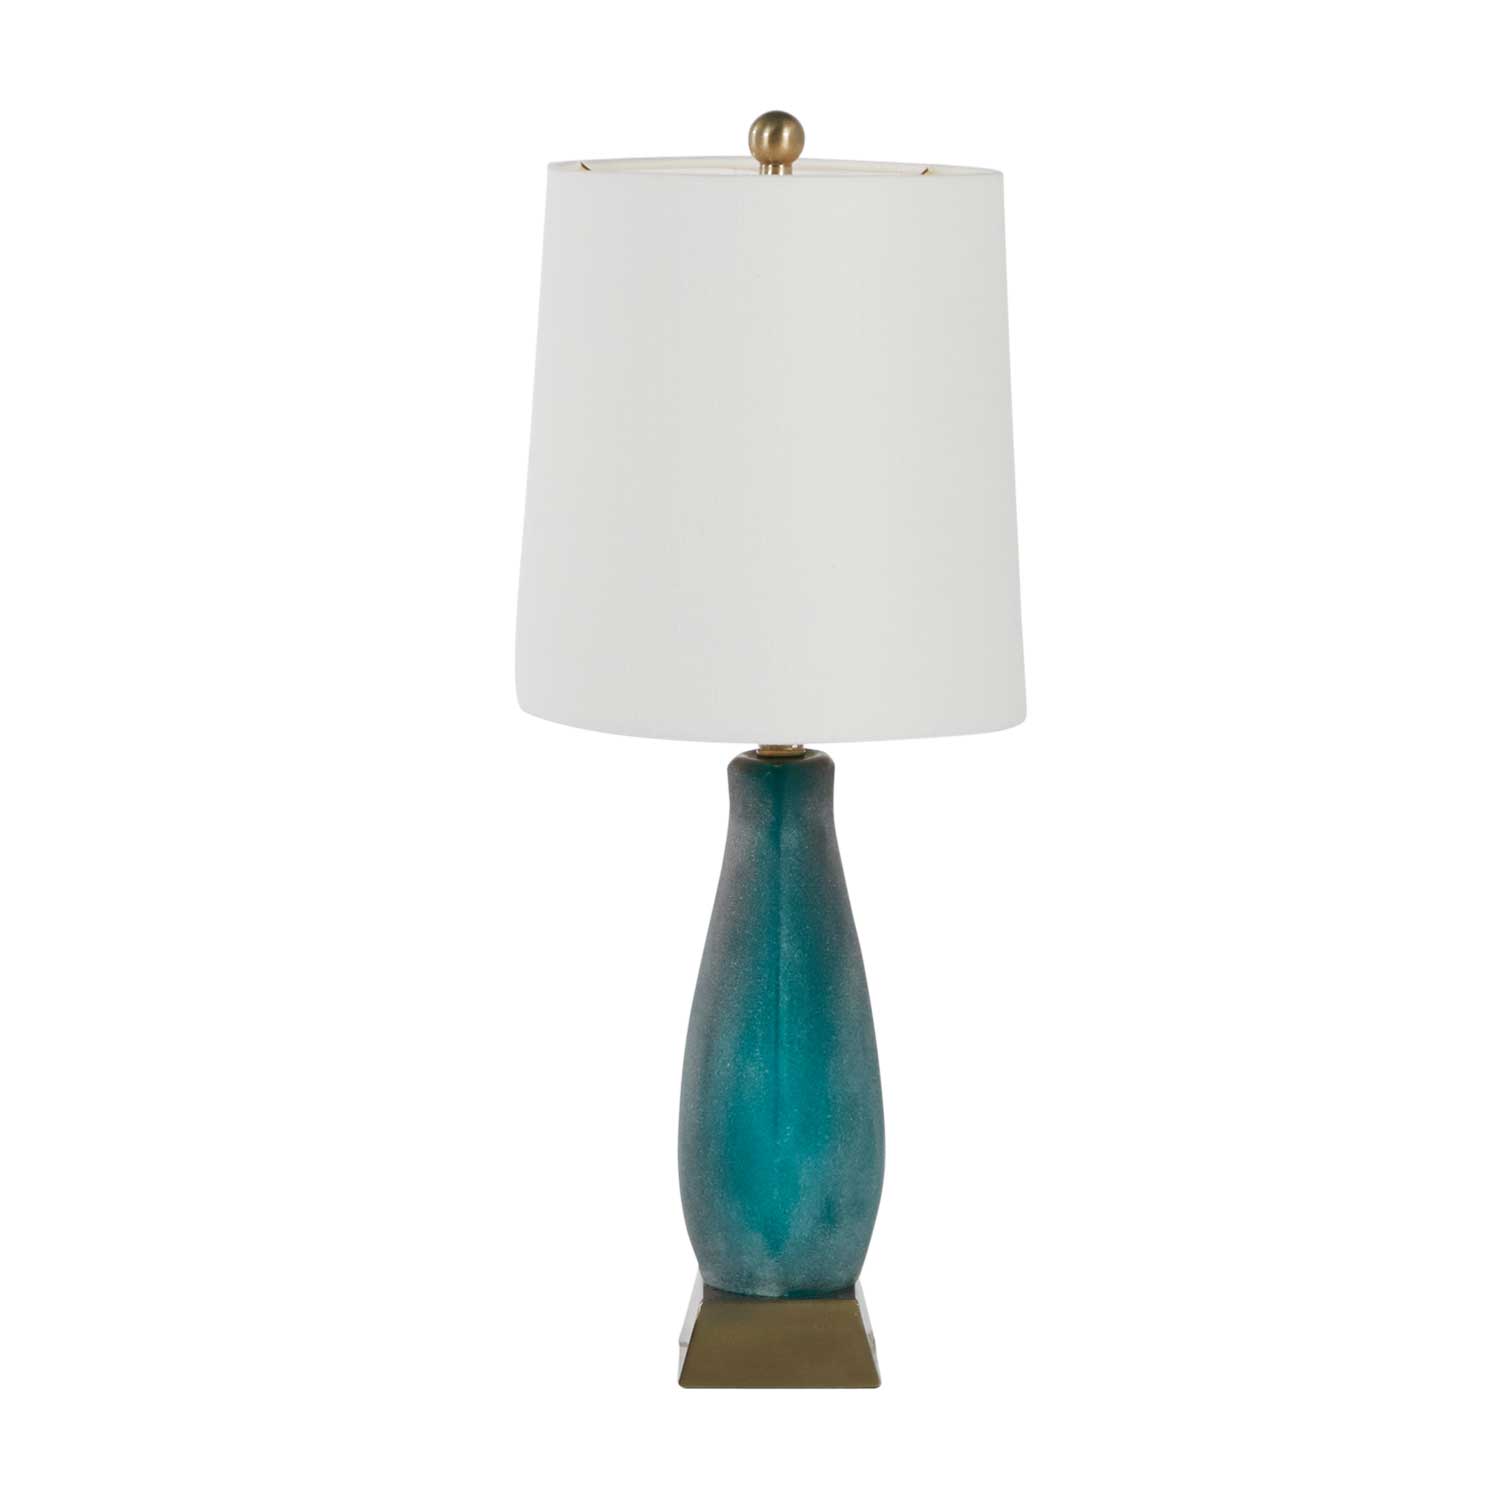 harris table lamp – white thumbnail image